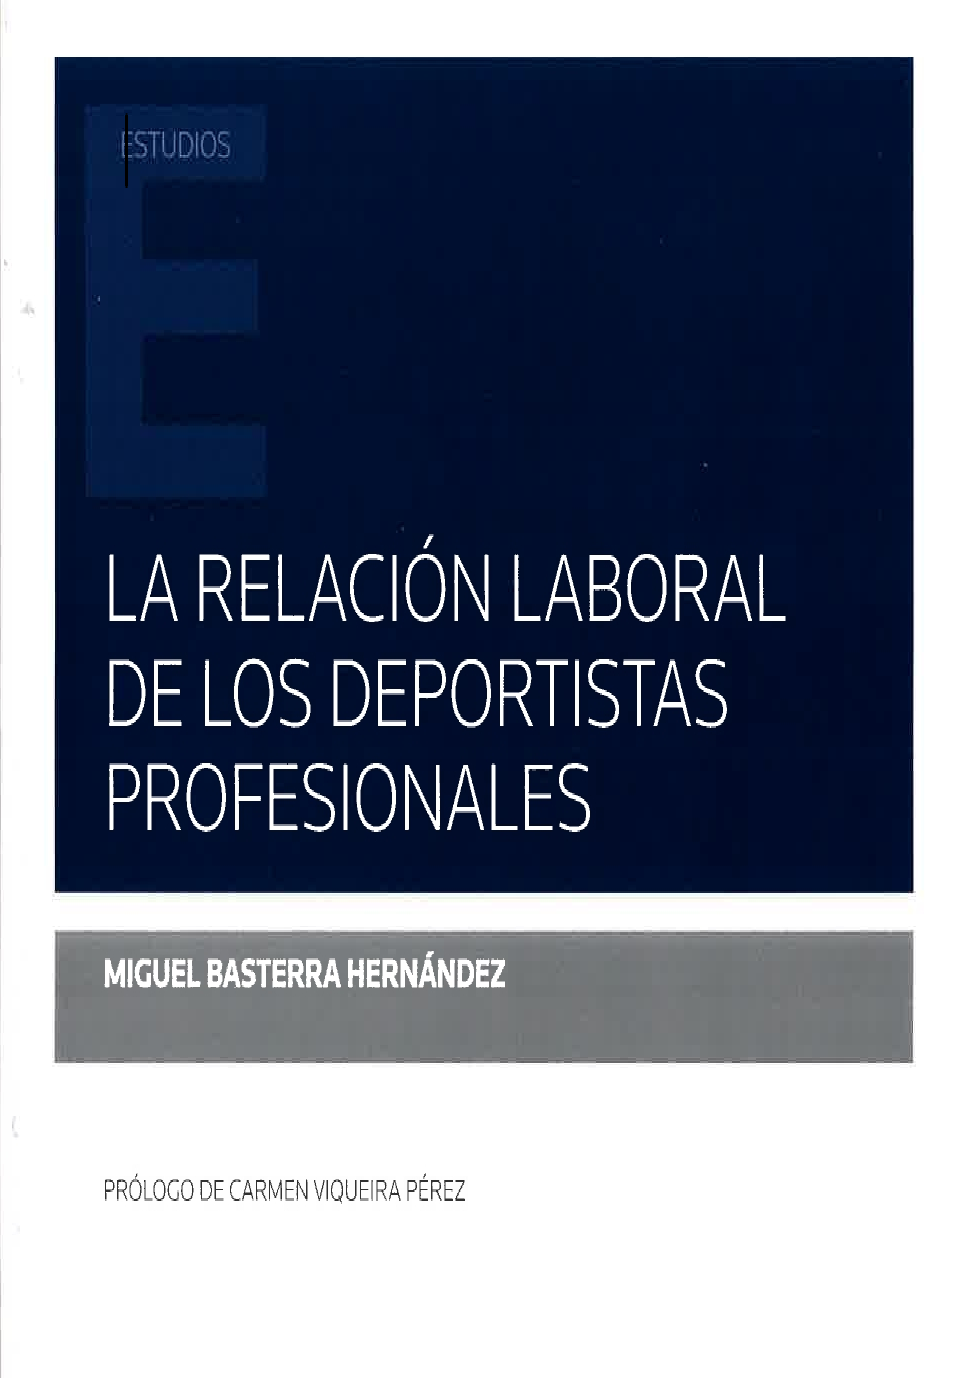 Imagen de portada del libro La relación laboral de los deportistas profesionales